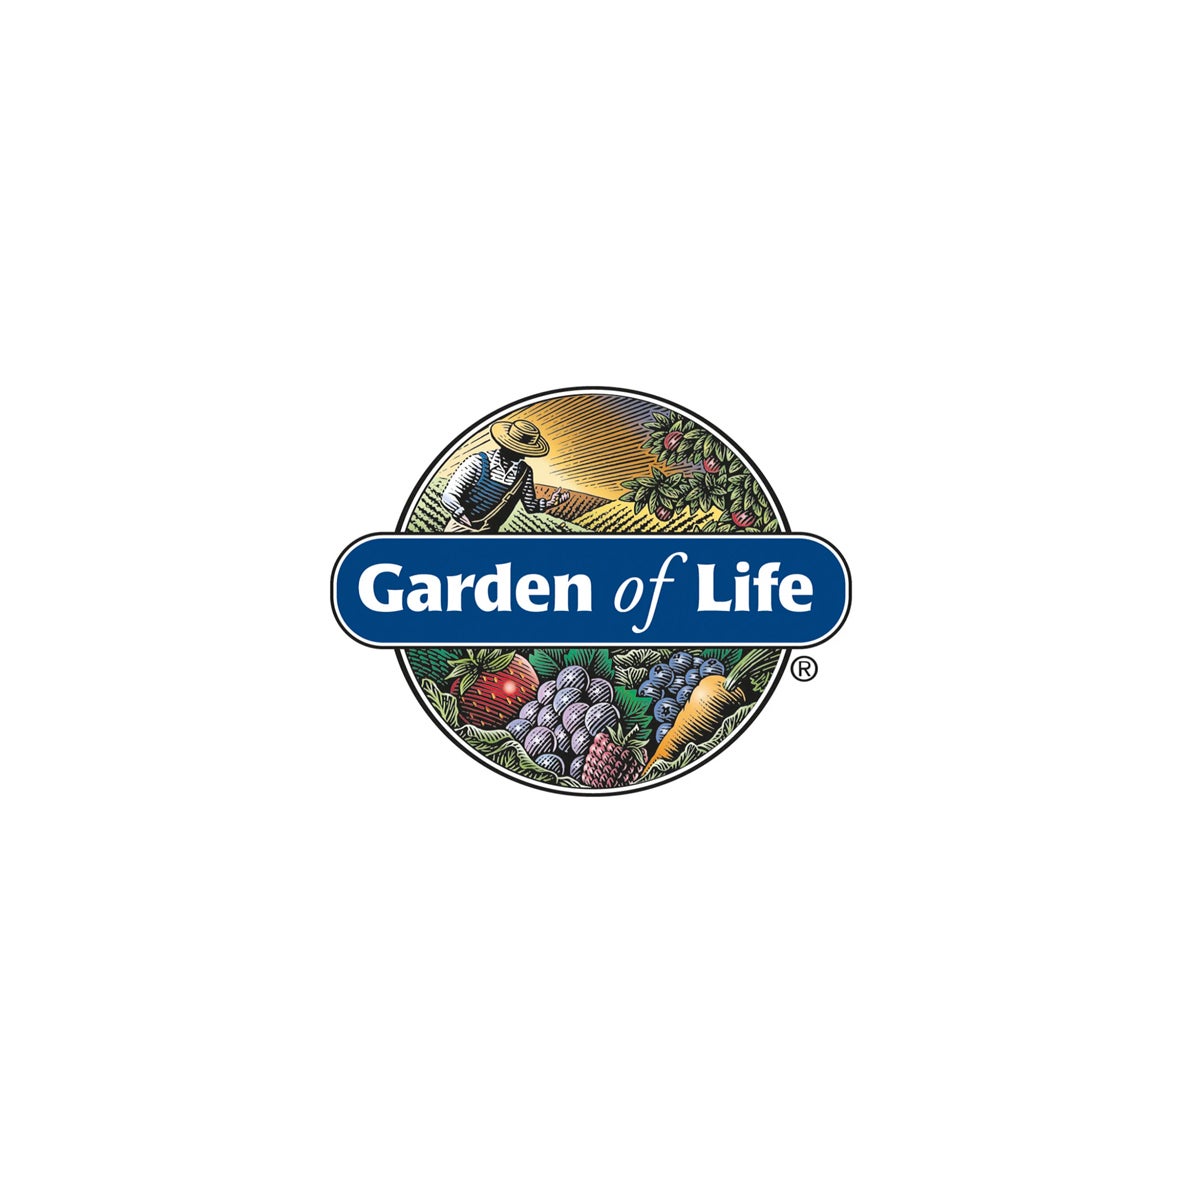 Garden of Life® logo